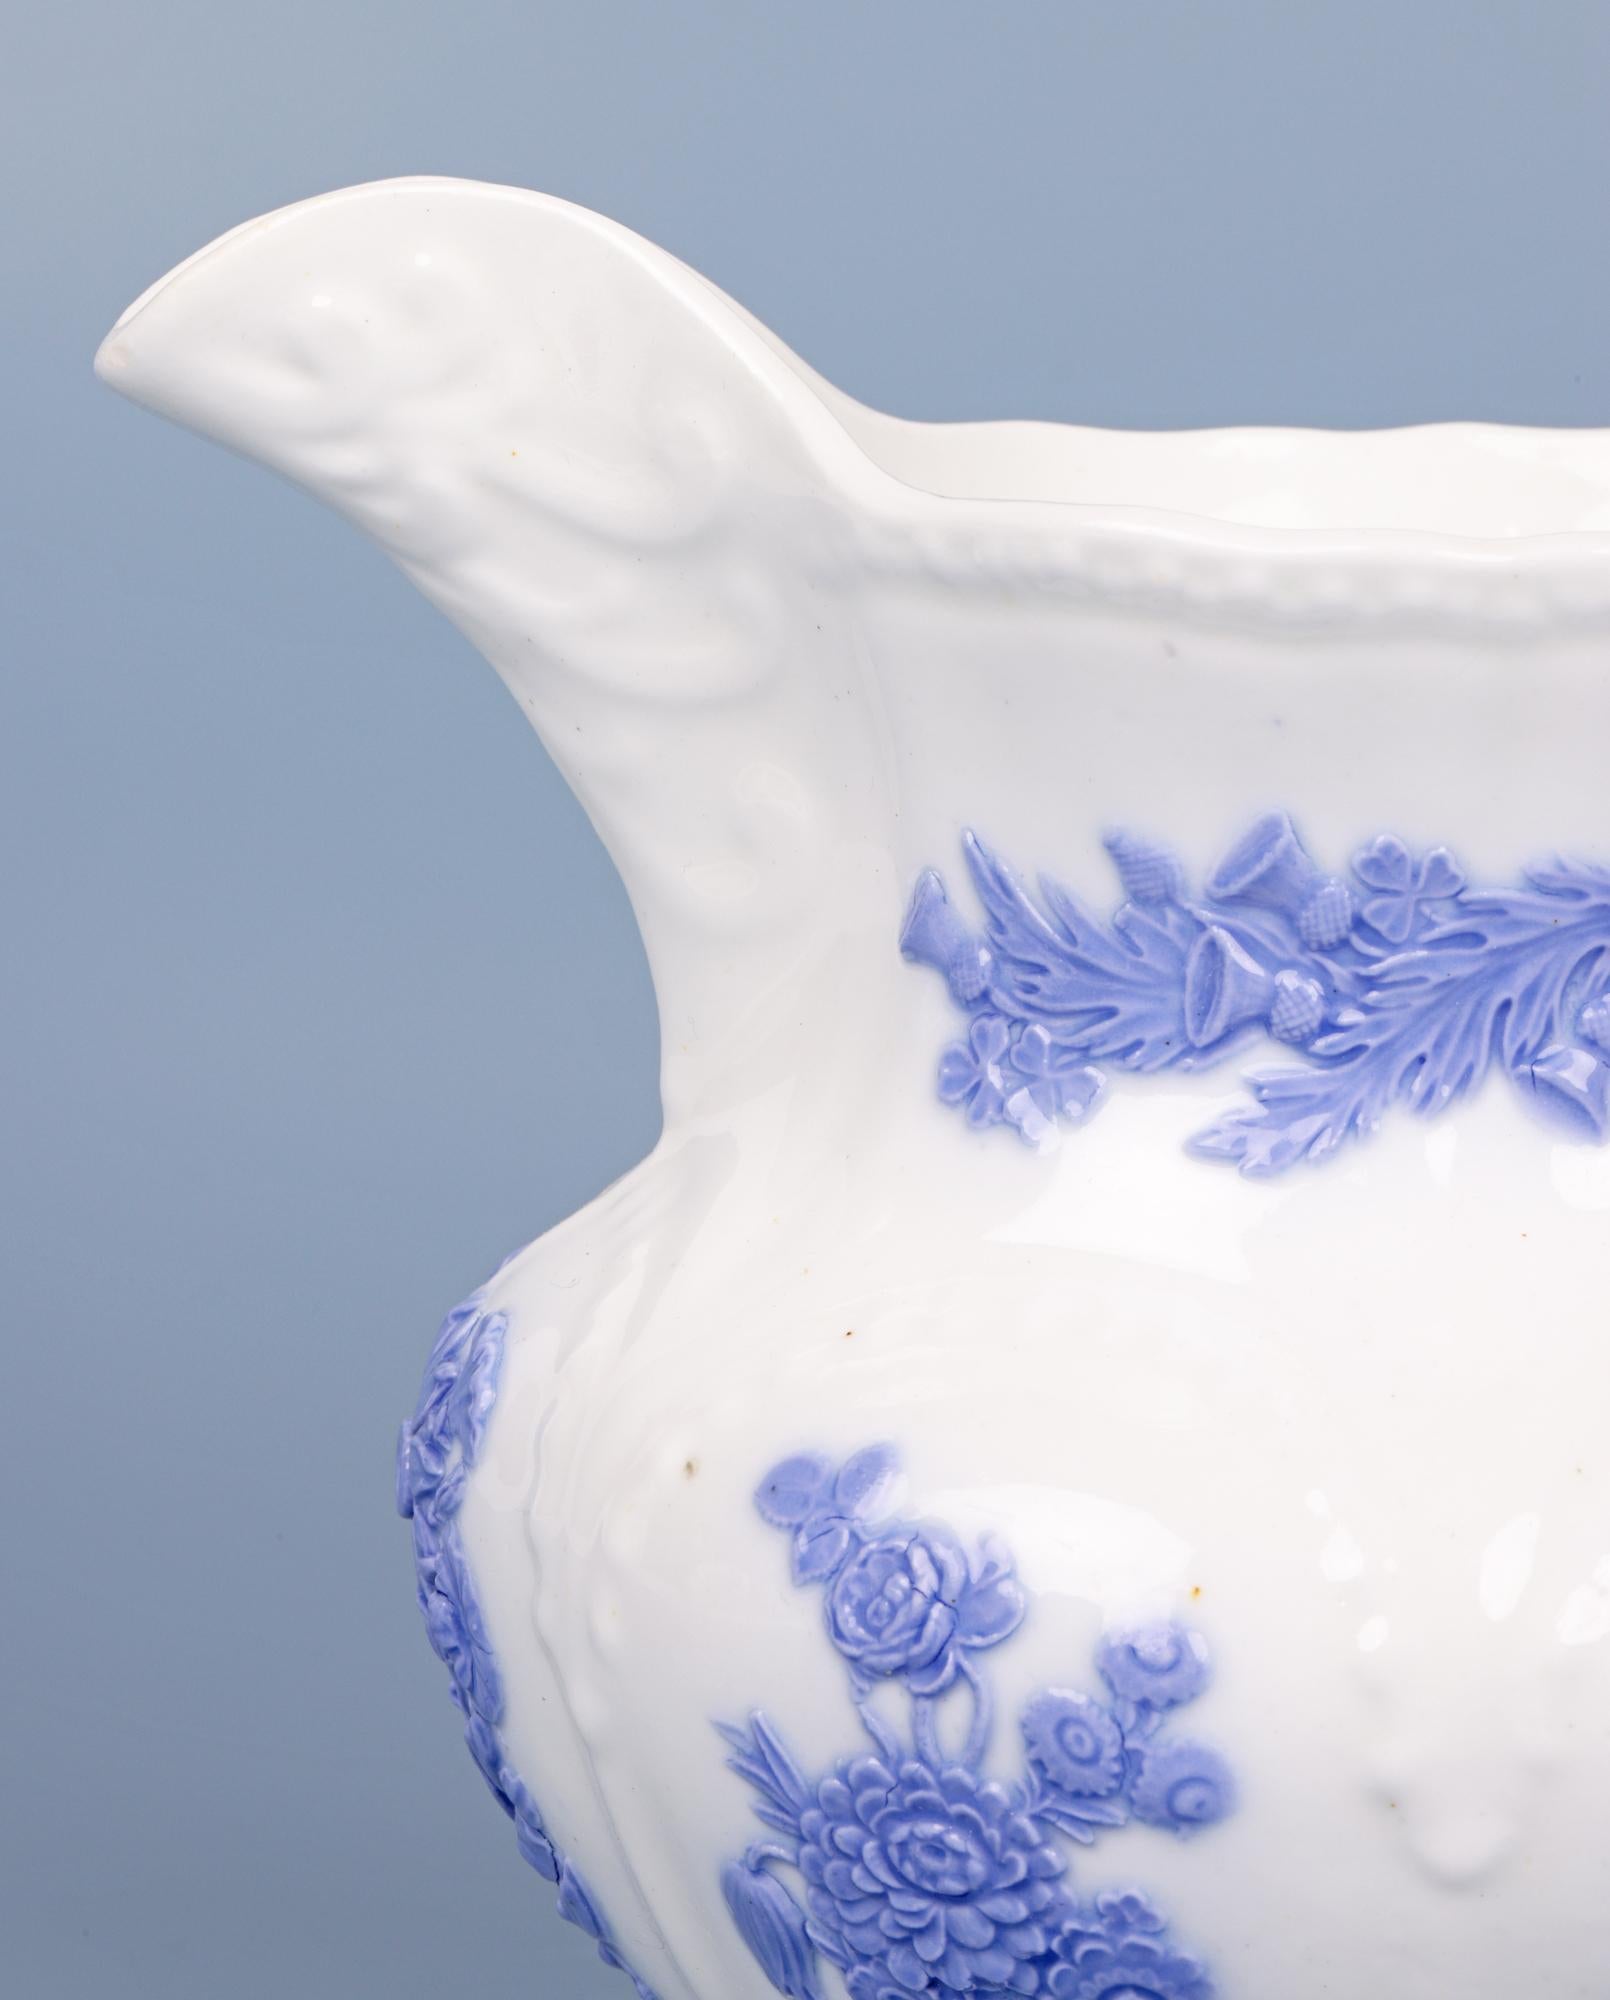 Ein sehr schöner antiker englischer Staffordshire-Porzellankrug mit lilafarbenem Blumendekor aus der Zeit um 1830. Die Kanne aus weißem Porzellan hat eine runde Form, steht auf einem schmalen, runden Sockel und hat einen gekniffenen Hals und eine